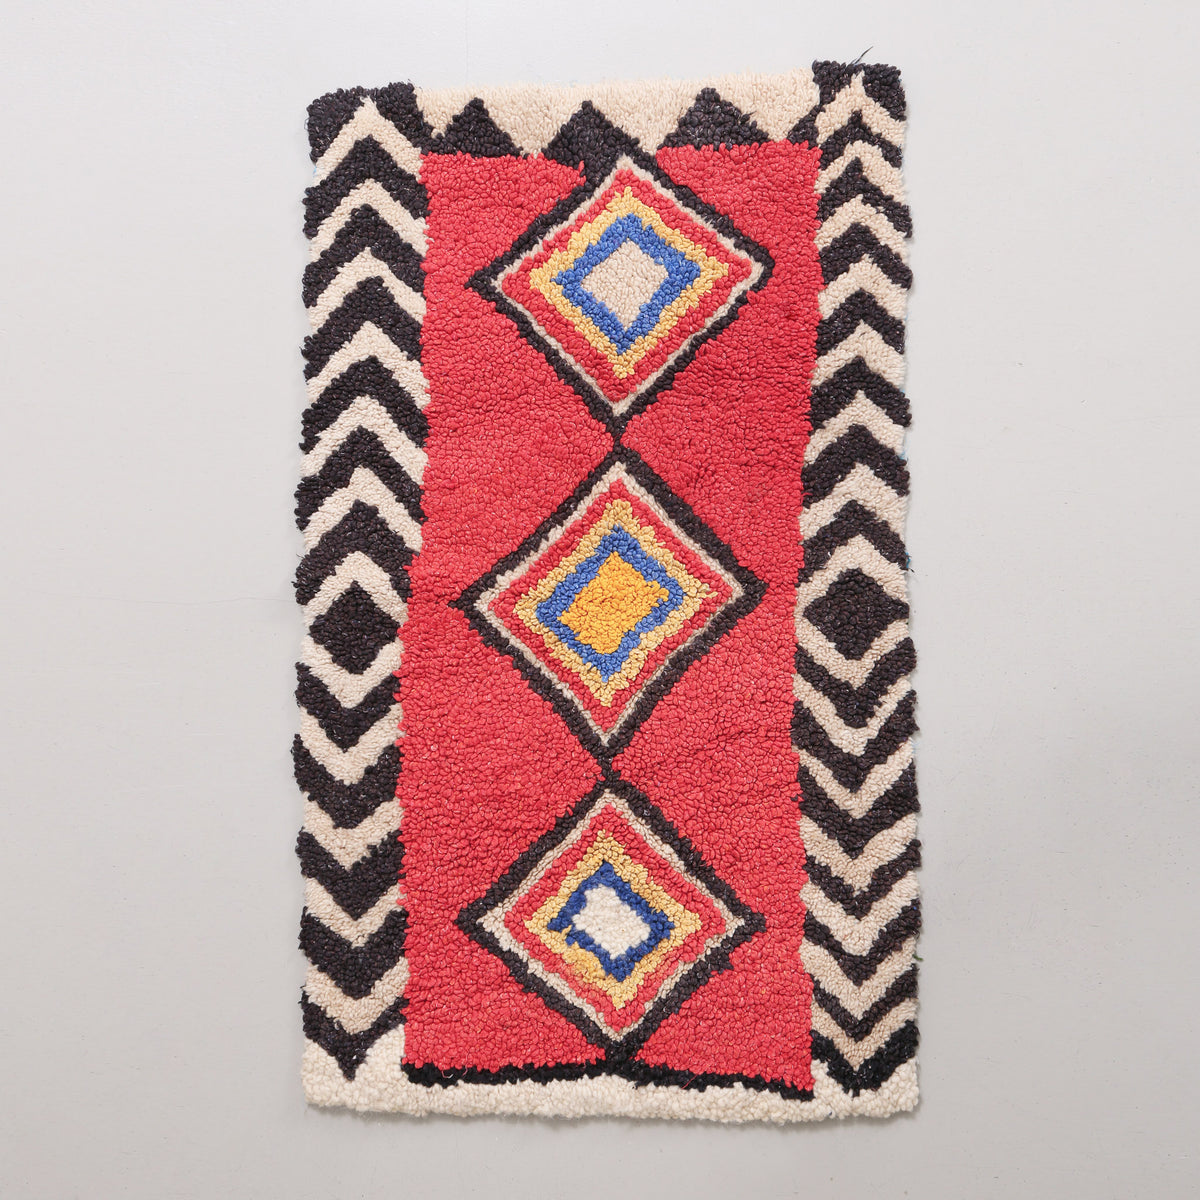 tappeto zindeck realizzato intracciando lana su un sacco di plastica. base in lana rossa con alla centro tre rombi colorati e bordi bianchi e neri